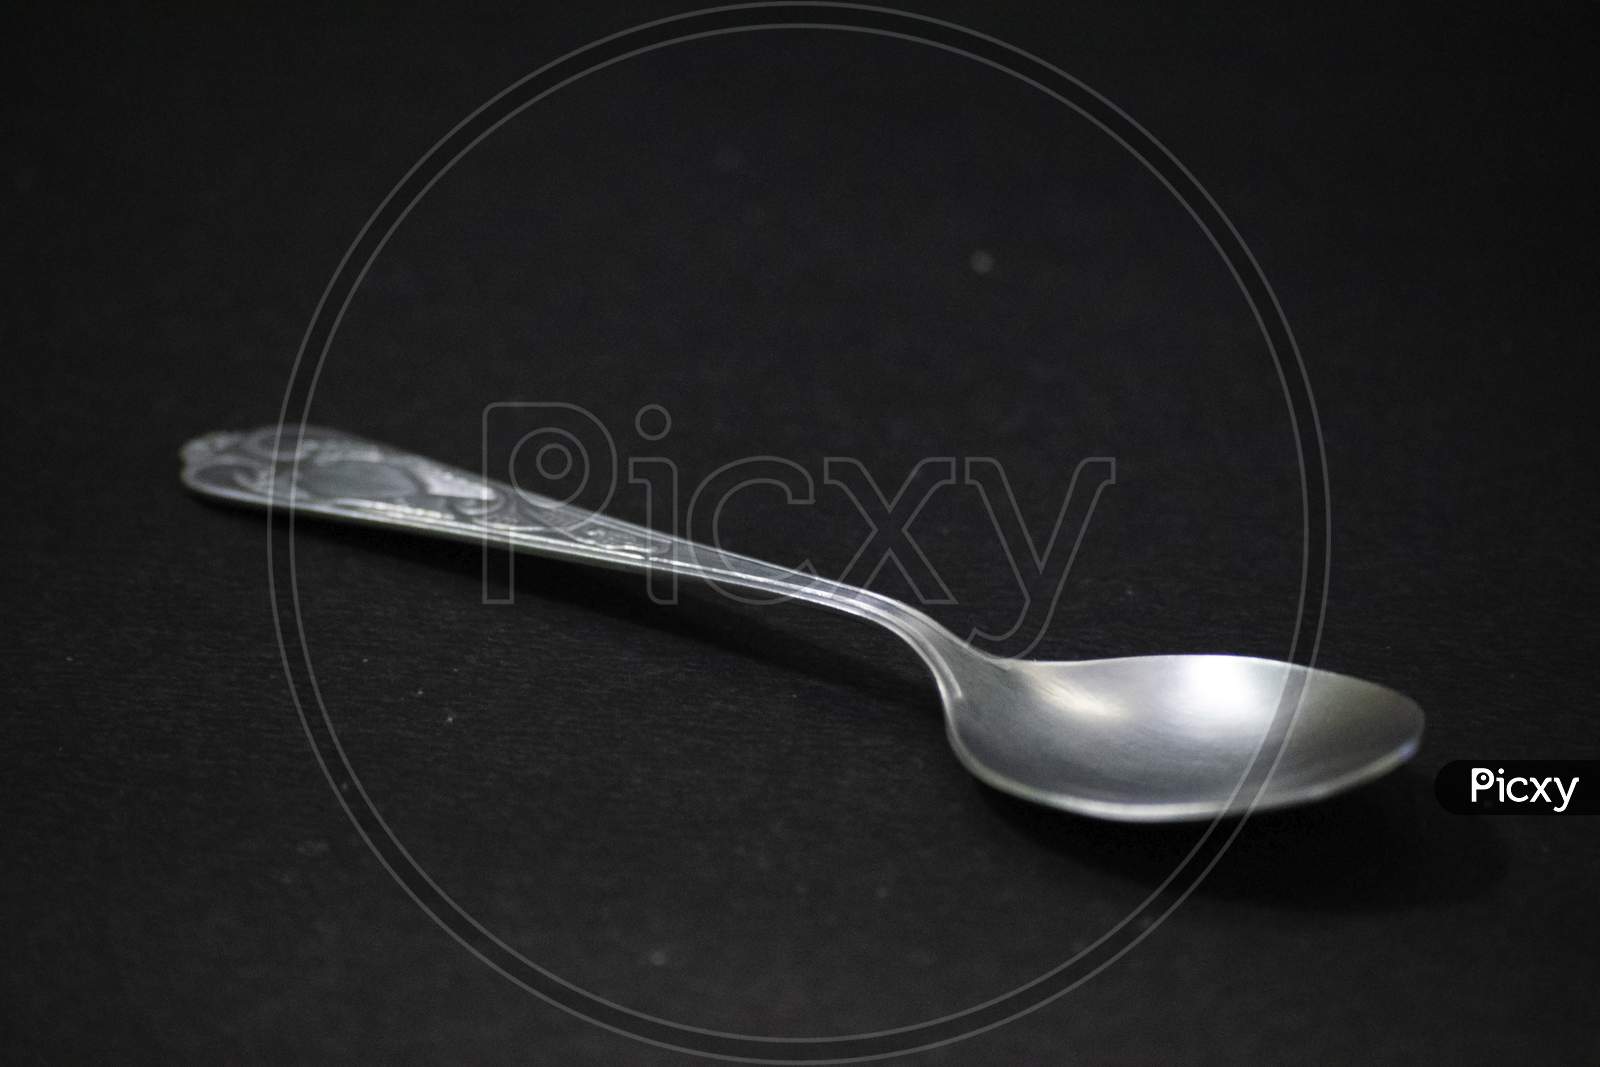 Steel spoons - utensil